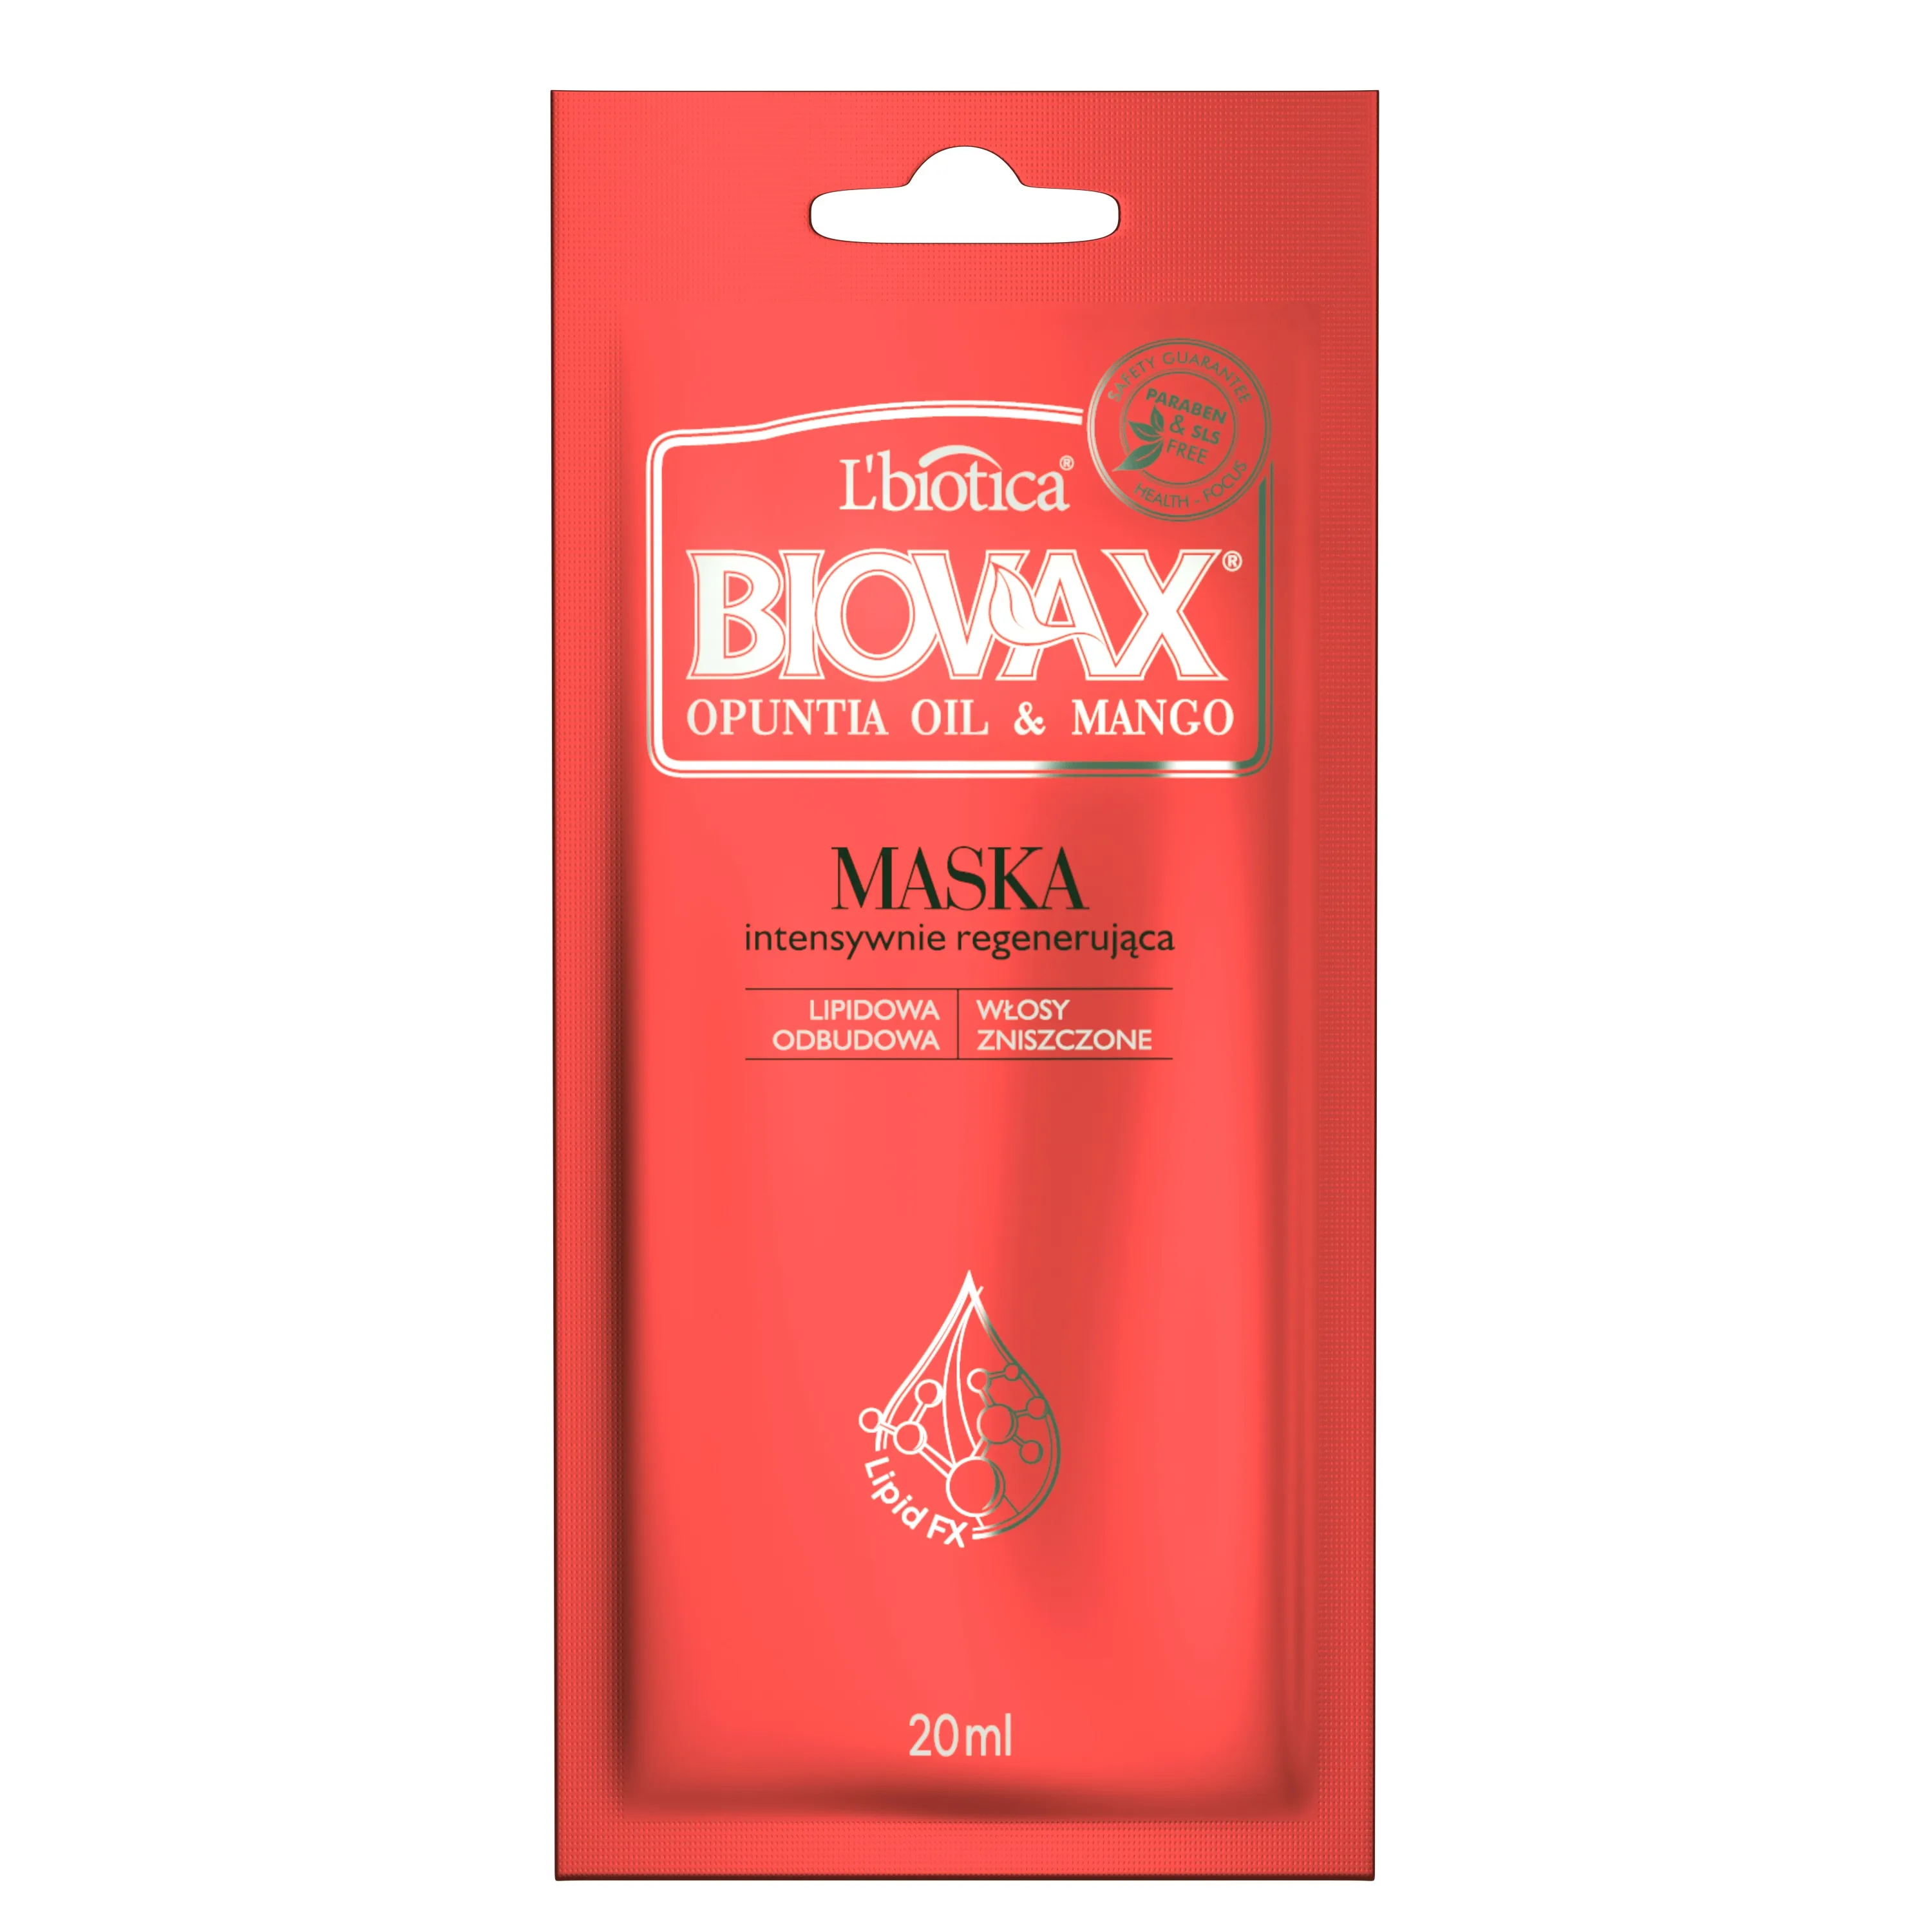 L'biotica Biovax Opuntia Oil&Mango, intensywnie regenerująca maseczka do włosów zniszczonych, 20 ml